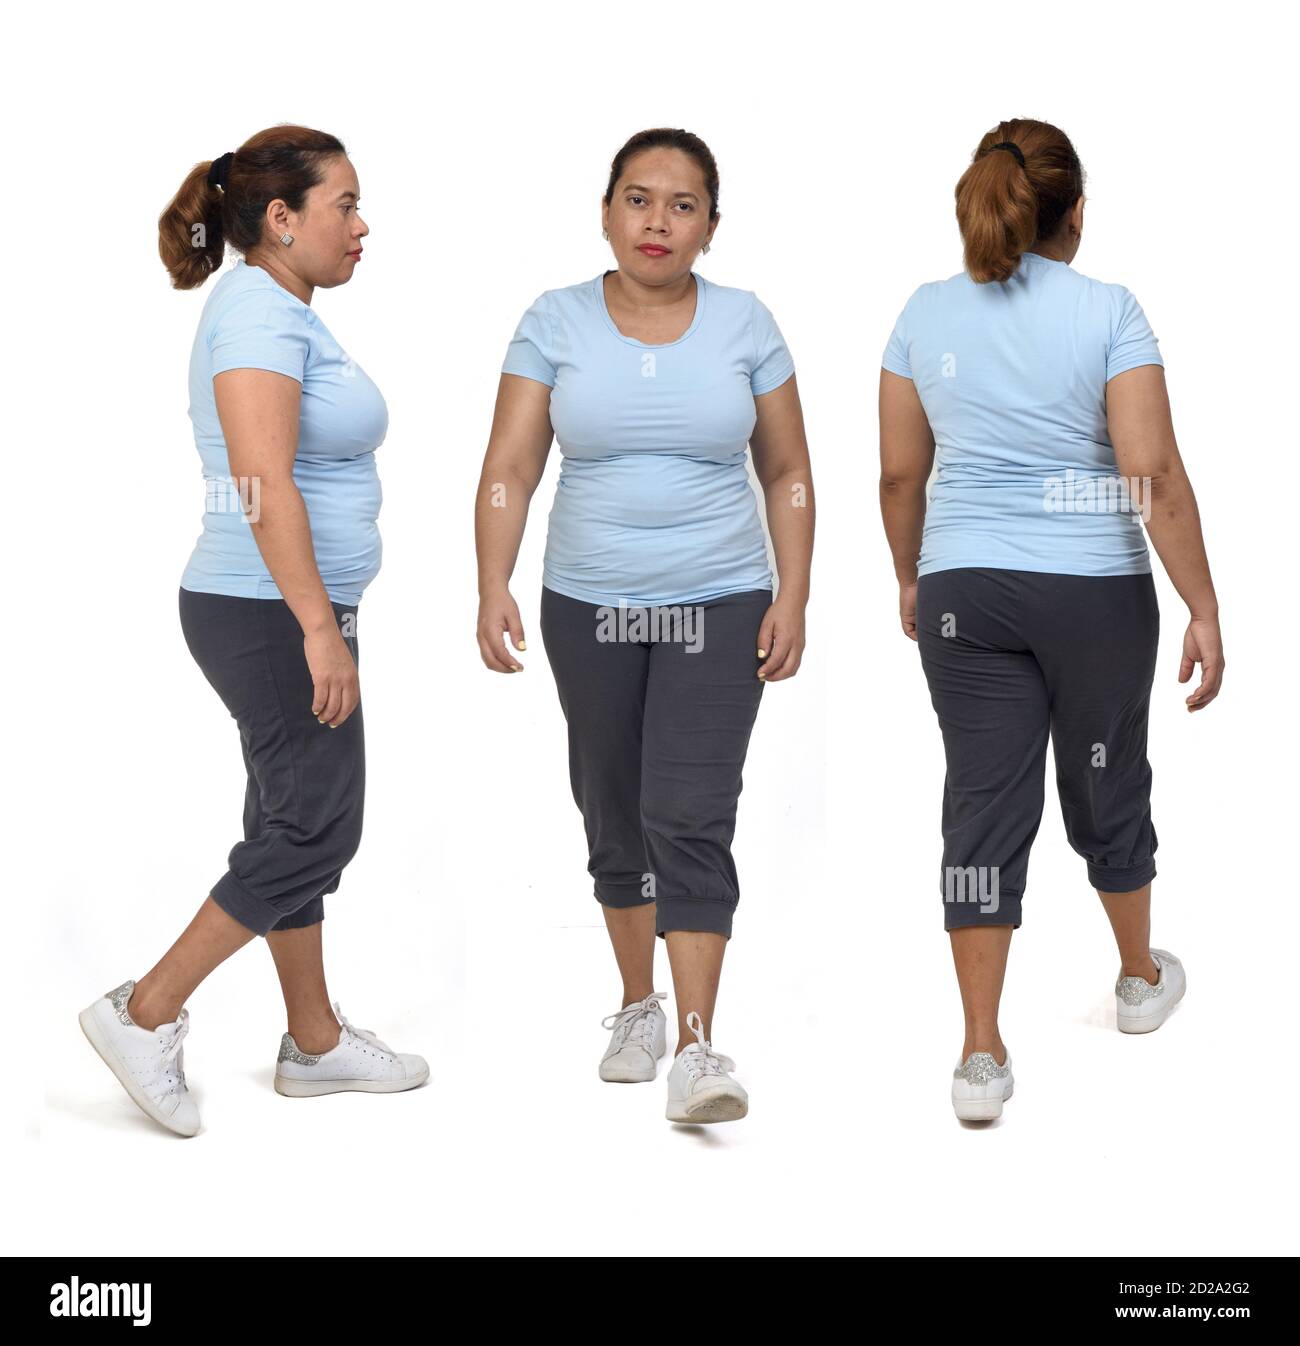 vue avant et arrière de la même femme avec des vêtements de sport marchant sur fond blanc Banque D'Images